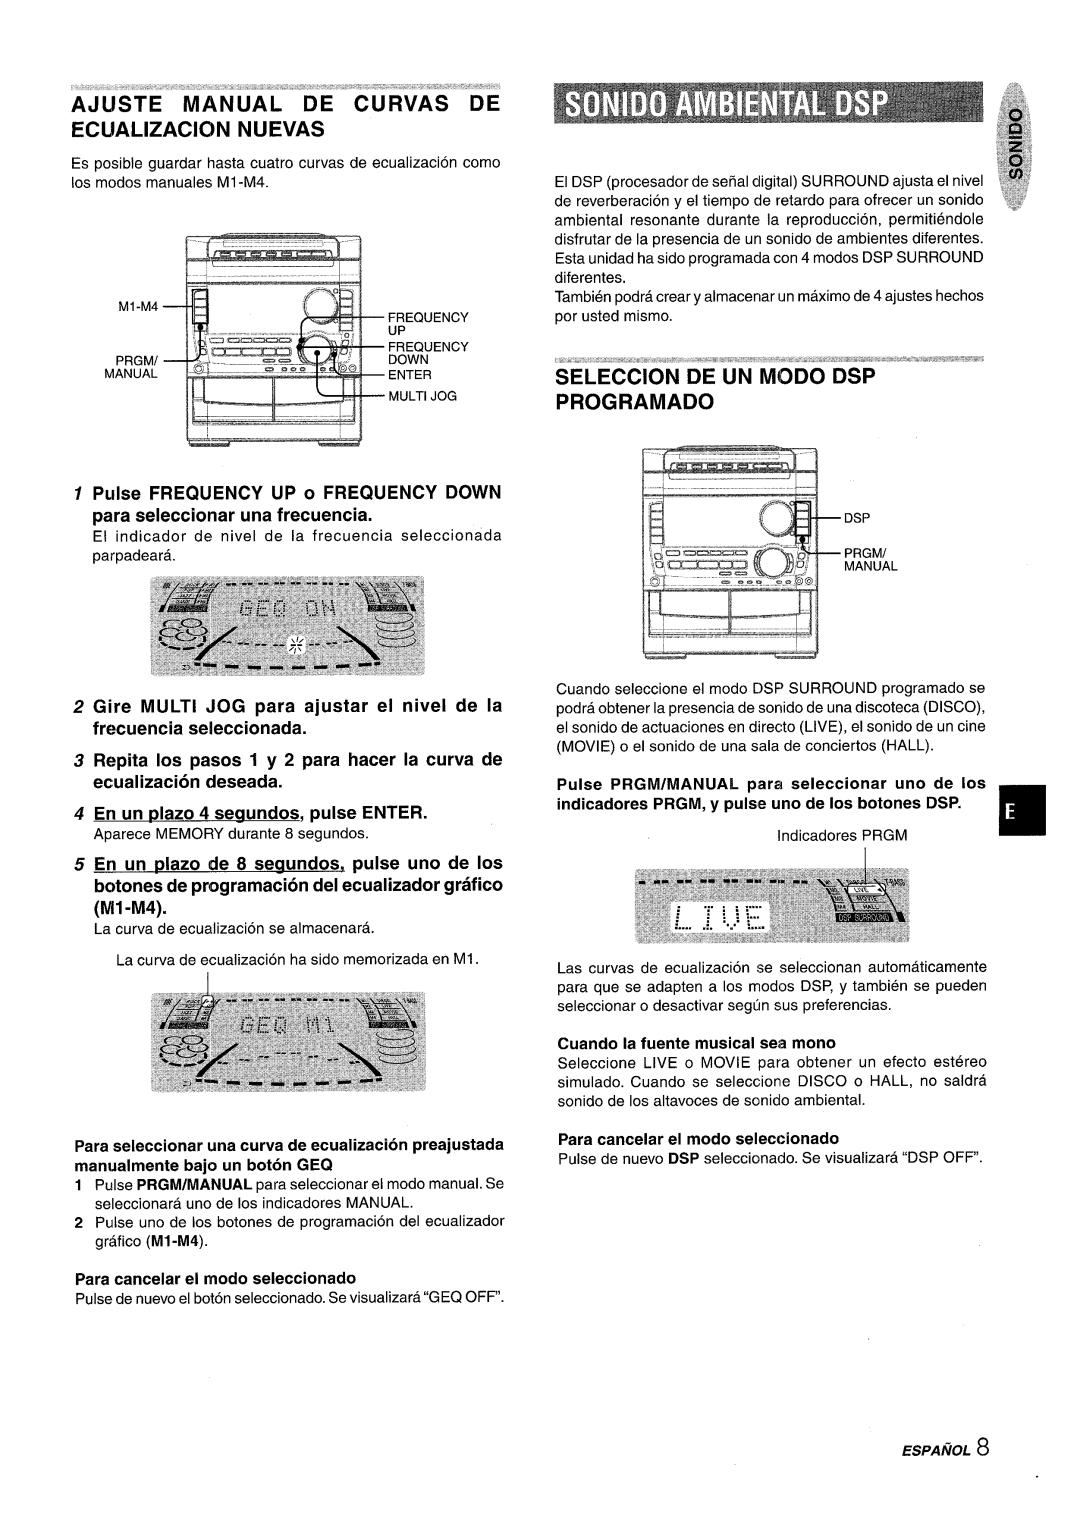 Sony NSX-A959 manual ECllALIZACION NUEVAS, Pulse FREQUENCY UP o FREQUENCY DOWN para seleccionar una frecuencia, k..-1 ,..,= 